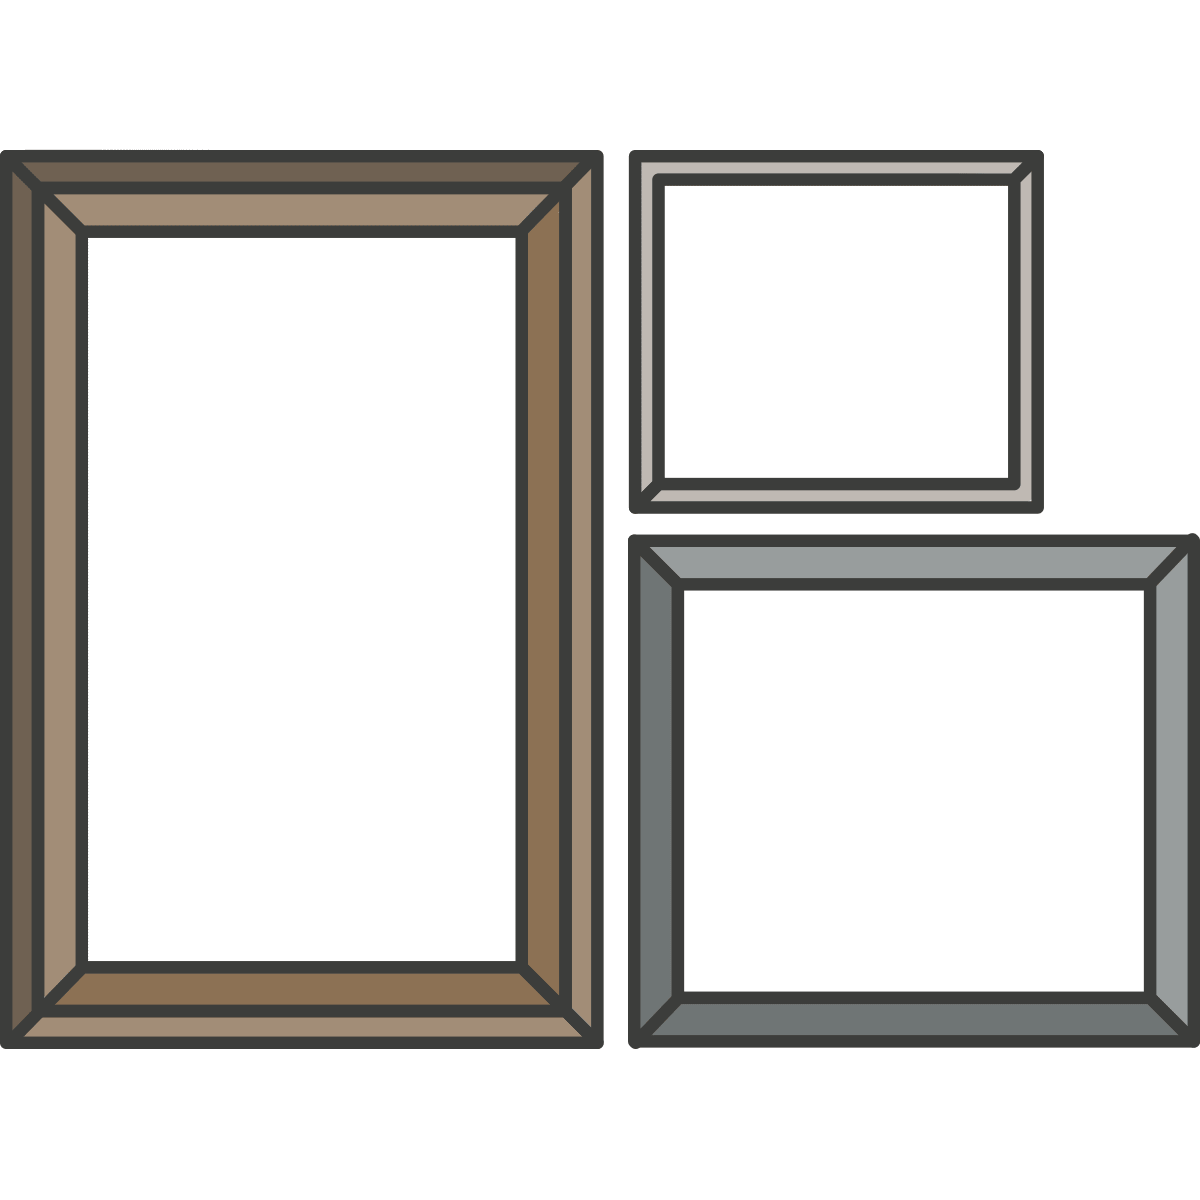 Wide Range of Frames